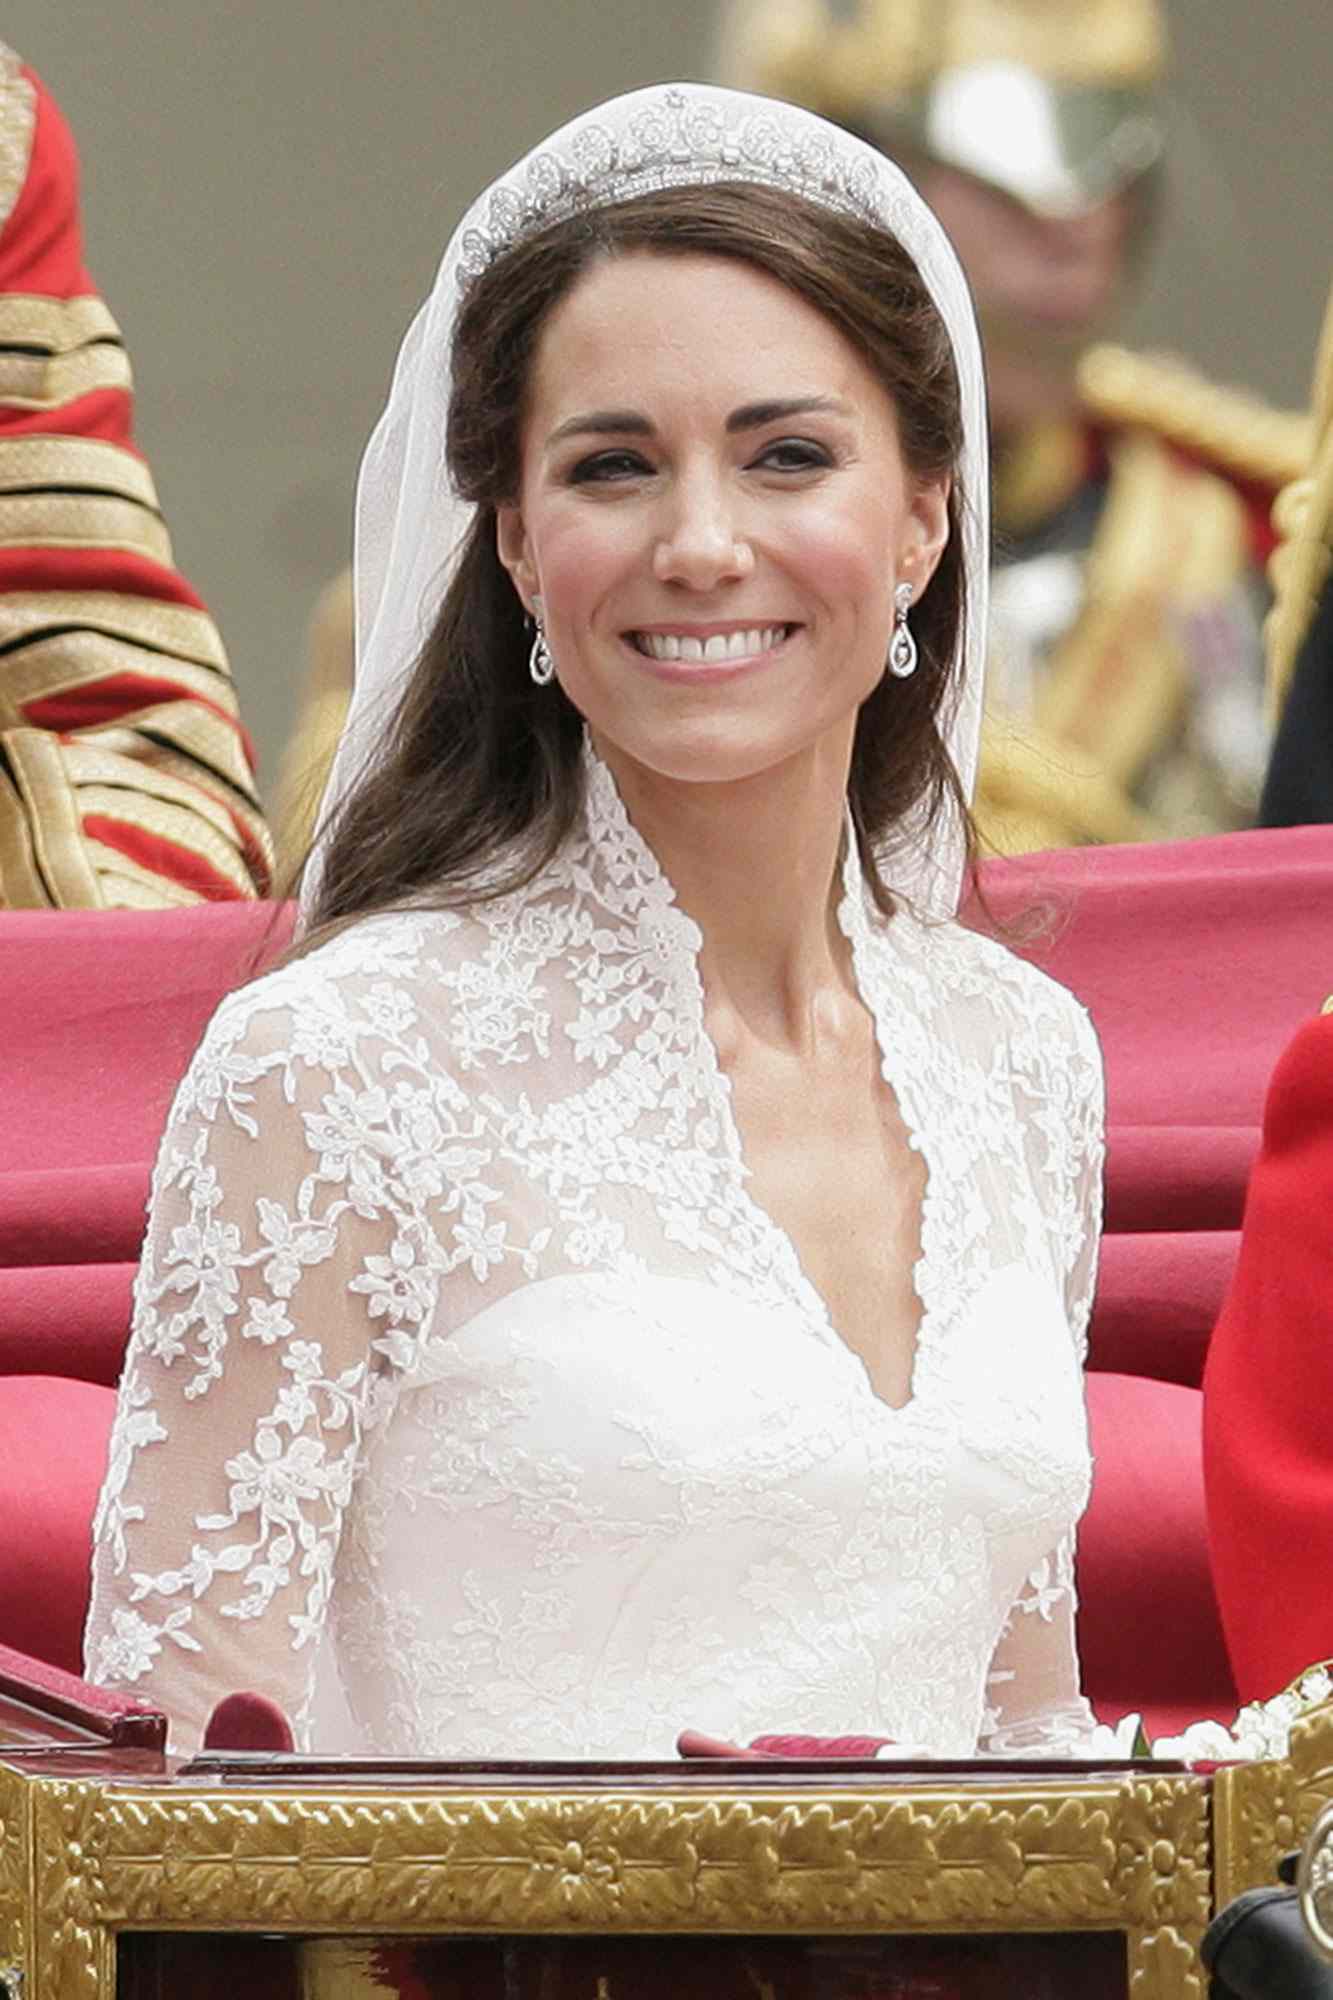 Kate Middleton machte "sehr klar", was sie für ihre königliche Hochzeitstorte wollte, sagt Baker